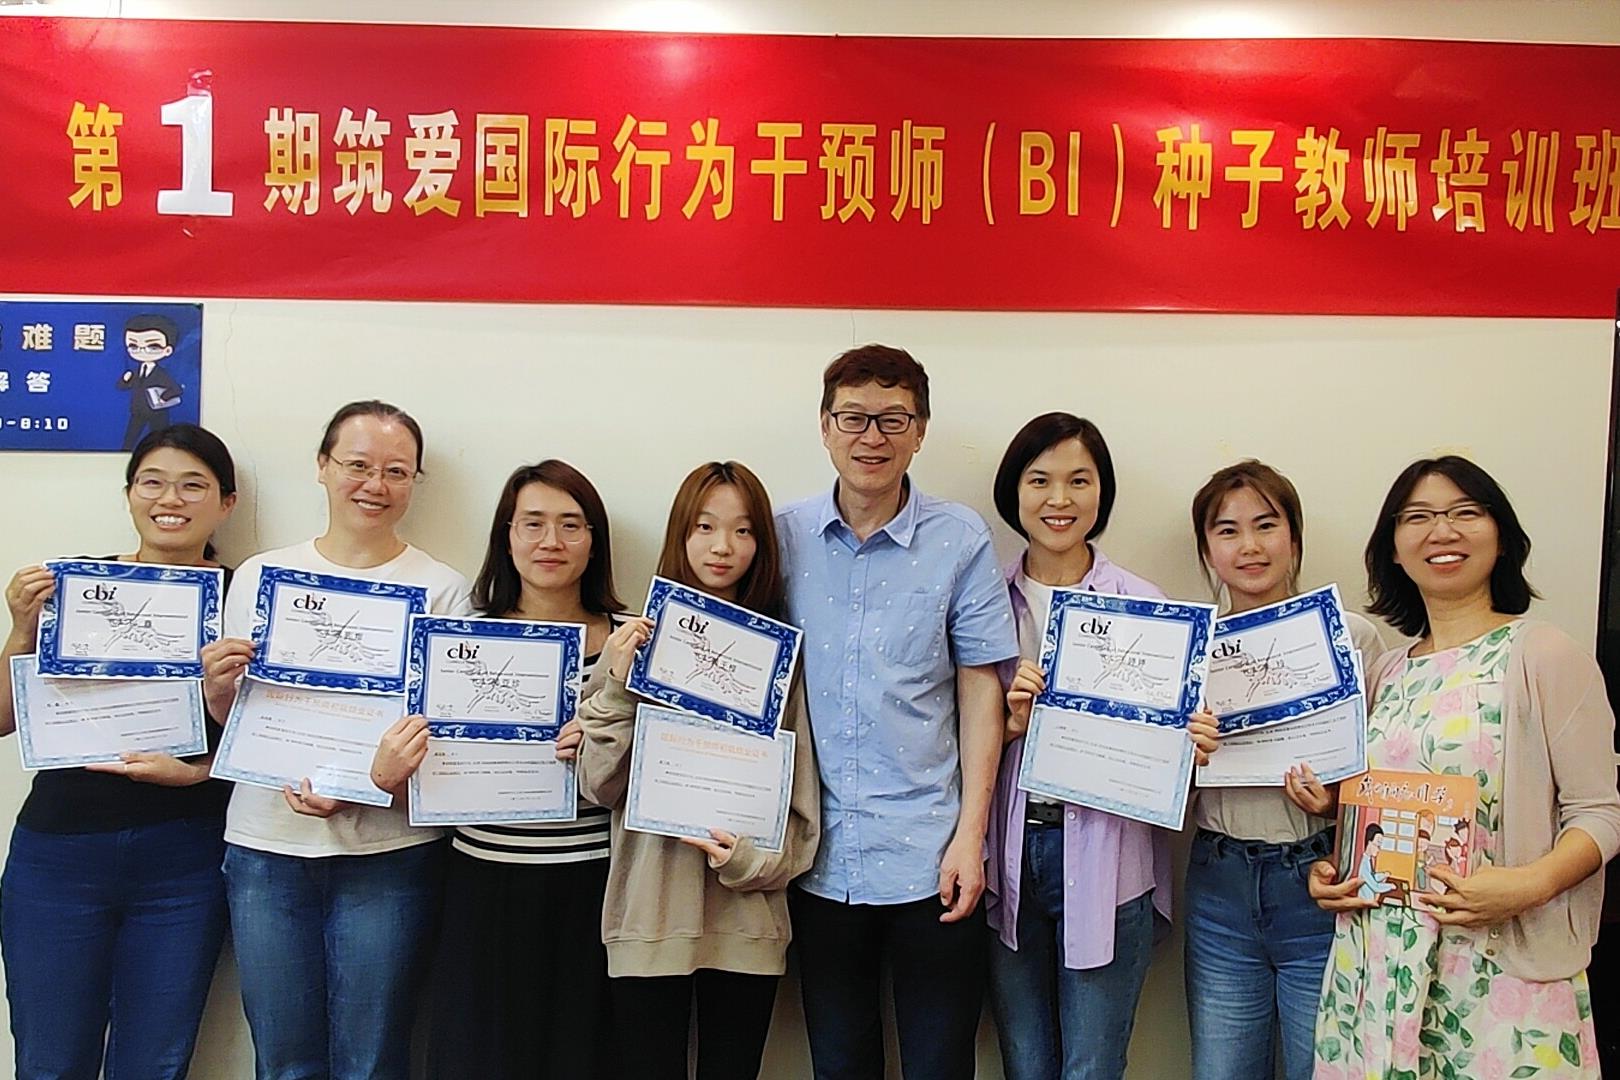 首届国际行为干预师BI种子教师培训在京圆满结束